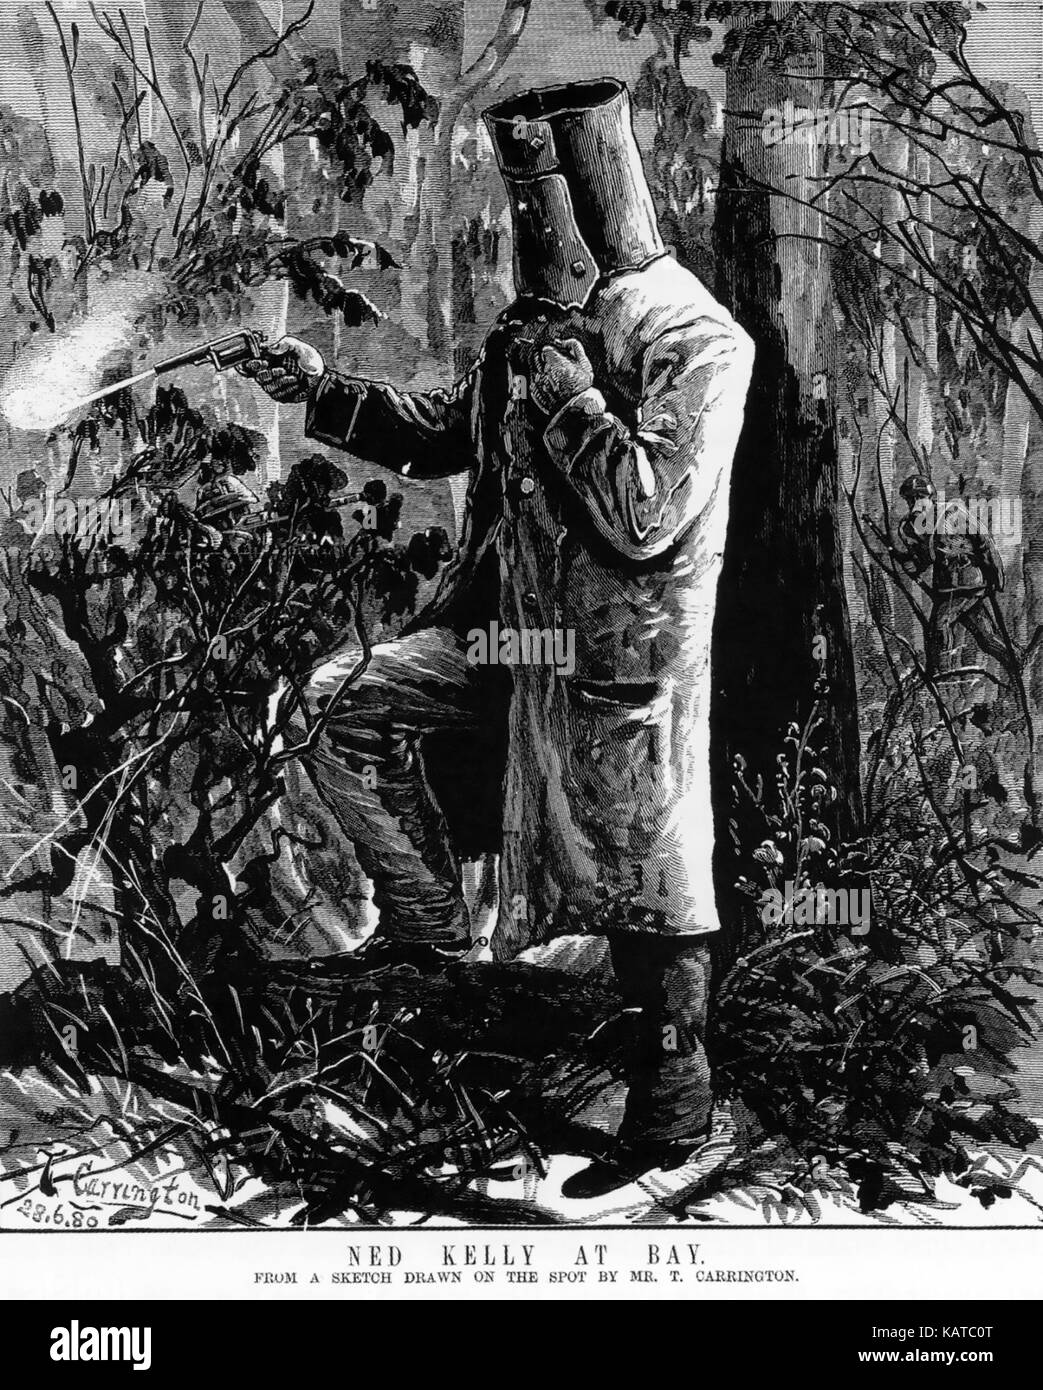 Ned KELLY (1854-1880) le bushranger australien fait son dernier stand à Glenrowan, Victoria. 'Ned Kelly at Bay' Woodcut par T. Carrington de l'Australian Sketcher, 3 juillet 1880. Notez son bras gauche blessé. Banque D'Images